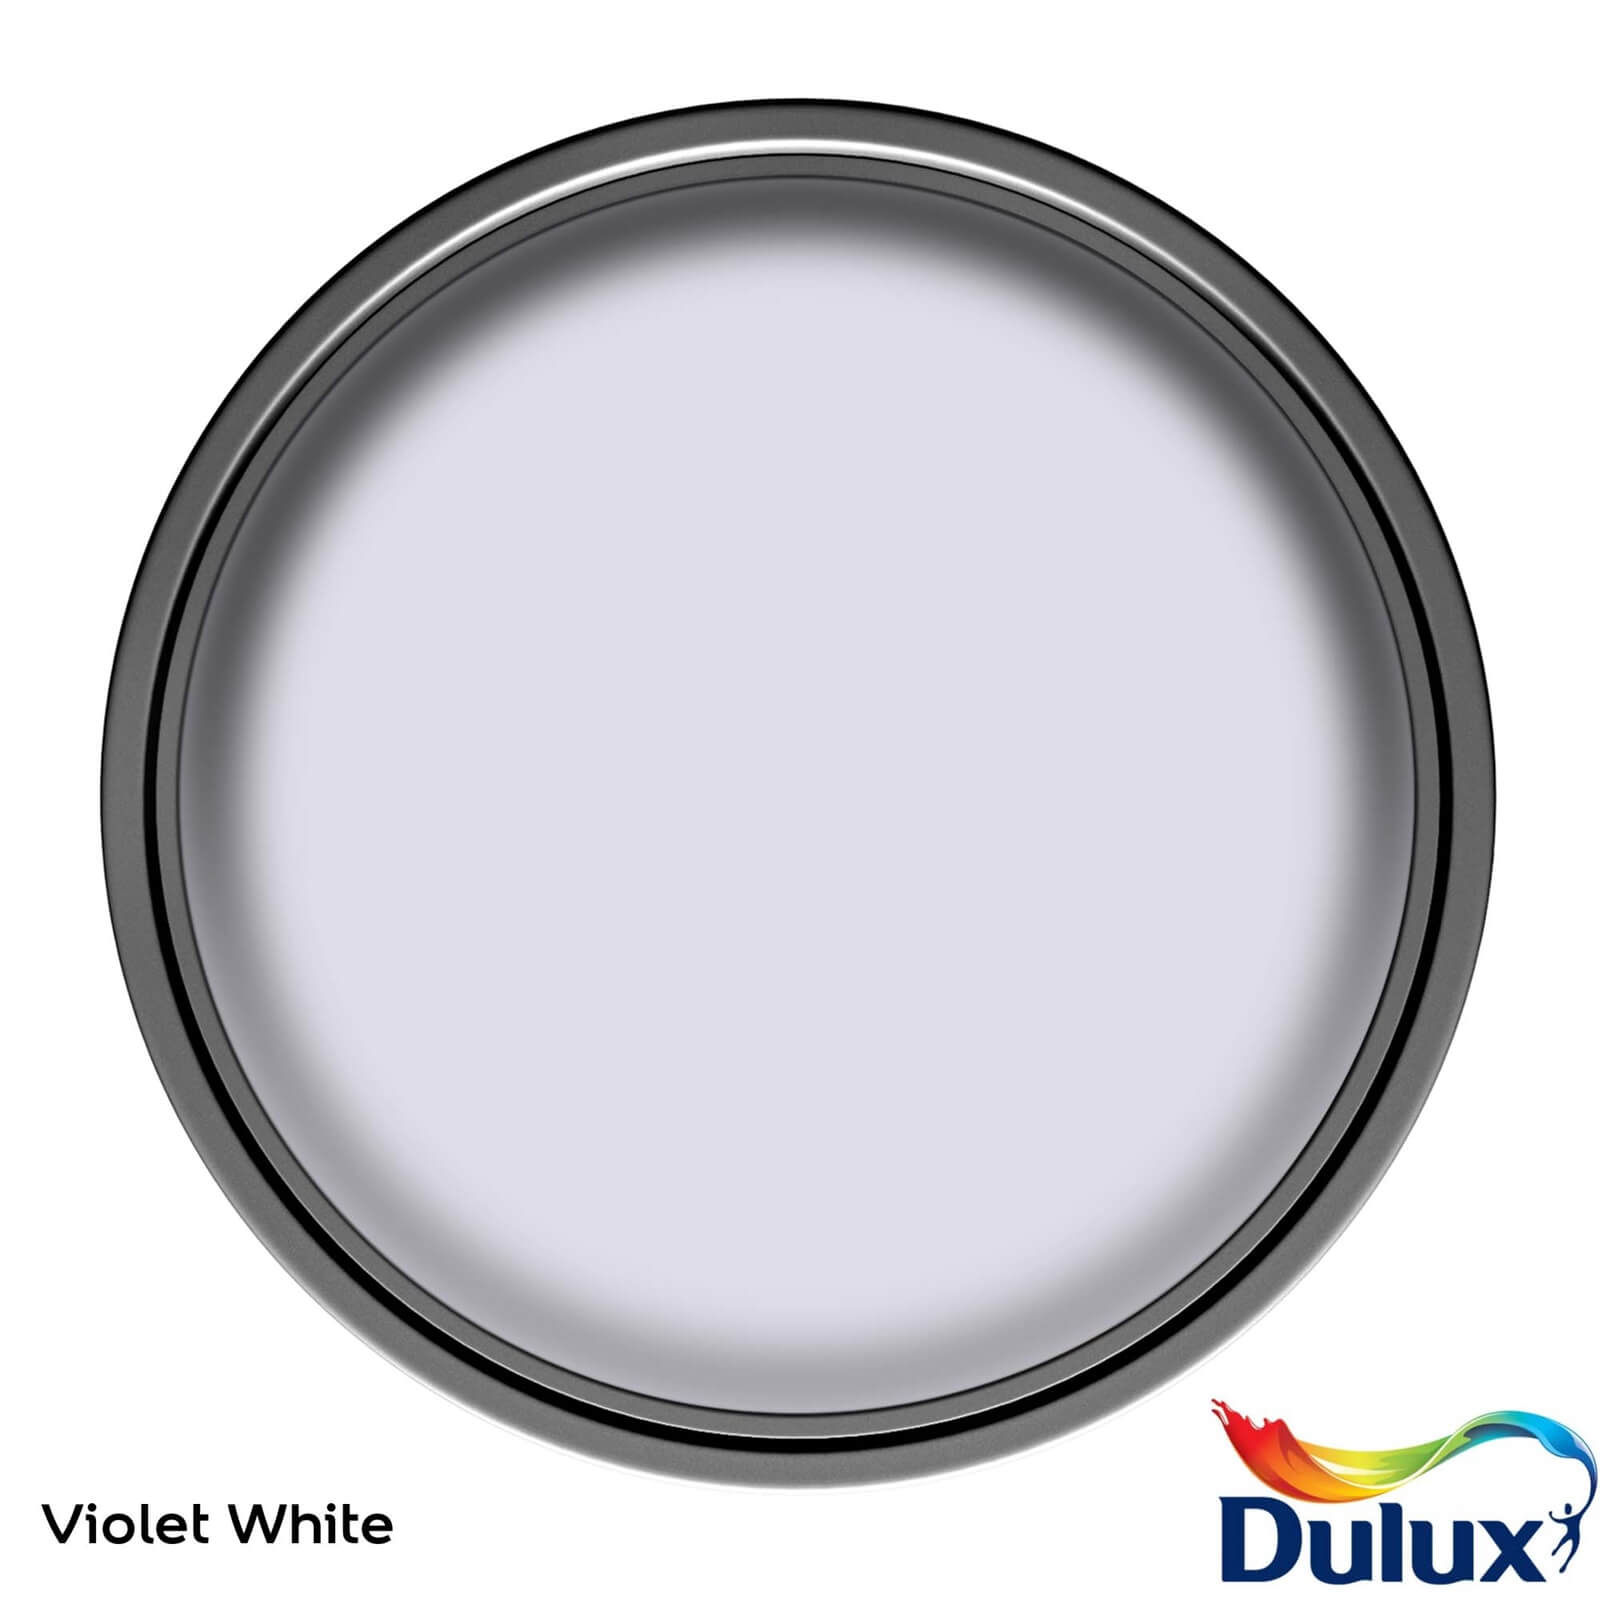 Dulux Easycare Washable & Tough Matt Paint Violet White - 2.5L